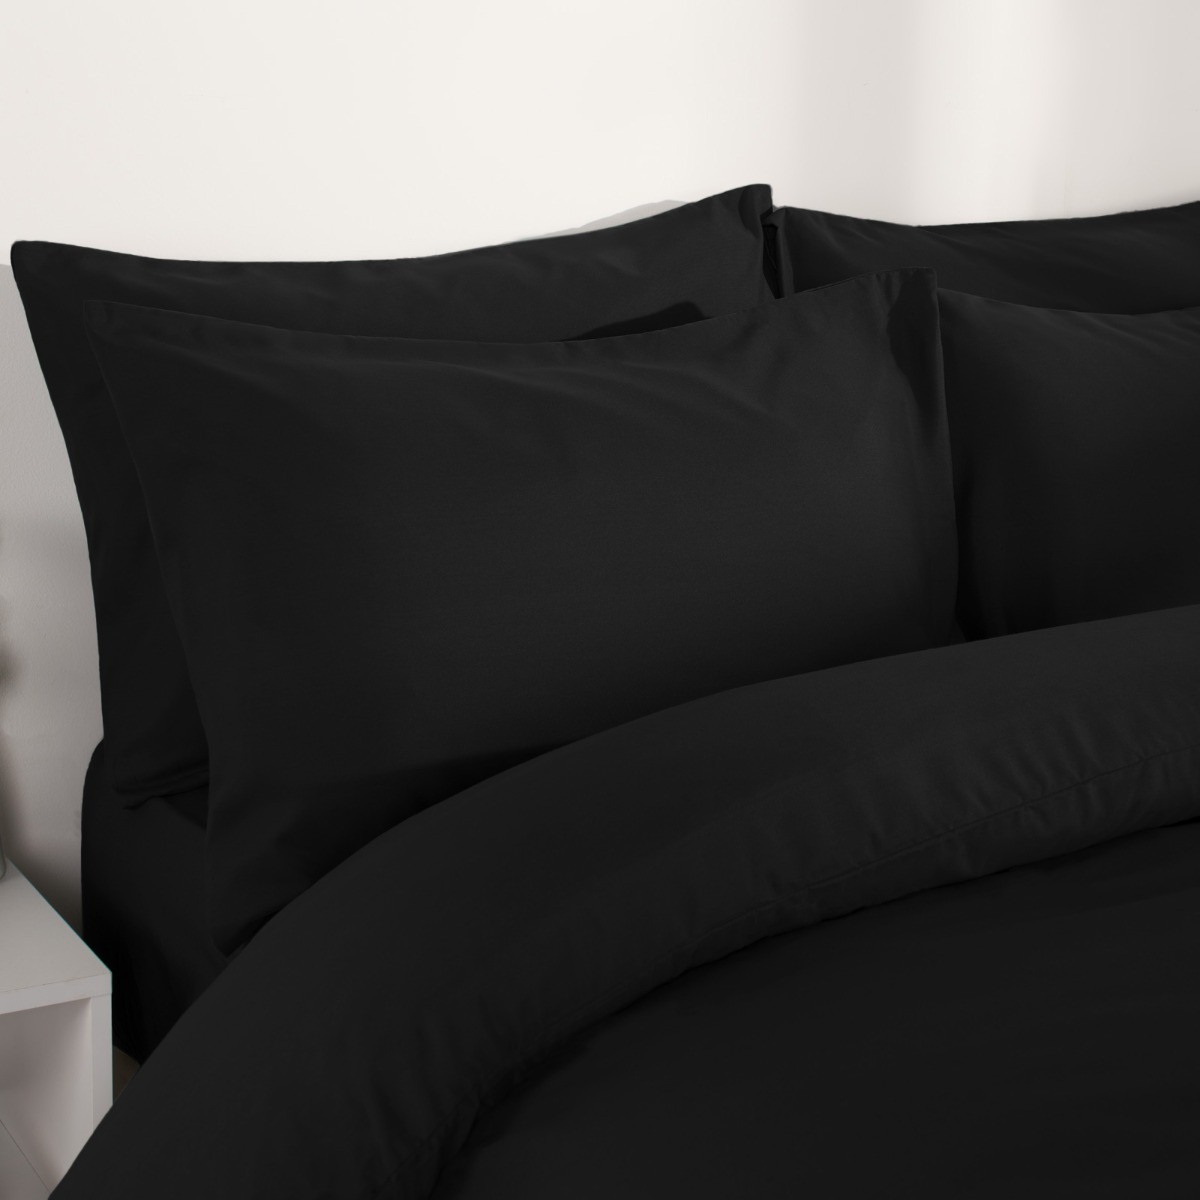 Brentfords Plain Duvet Cover Quilt with Pillowcases - Black, King>